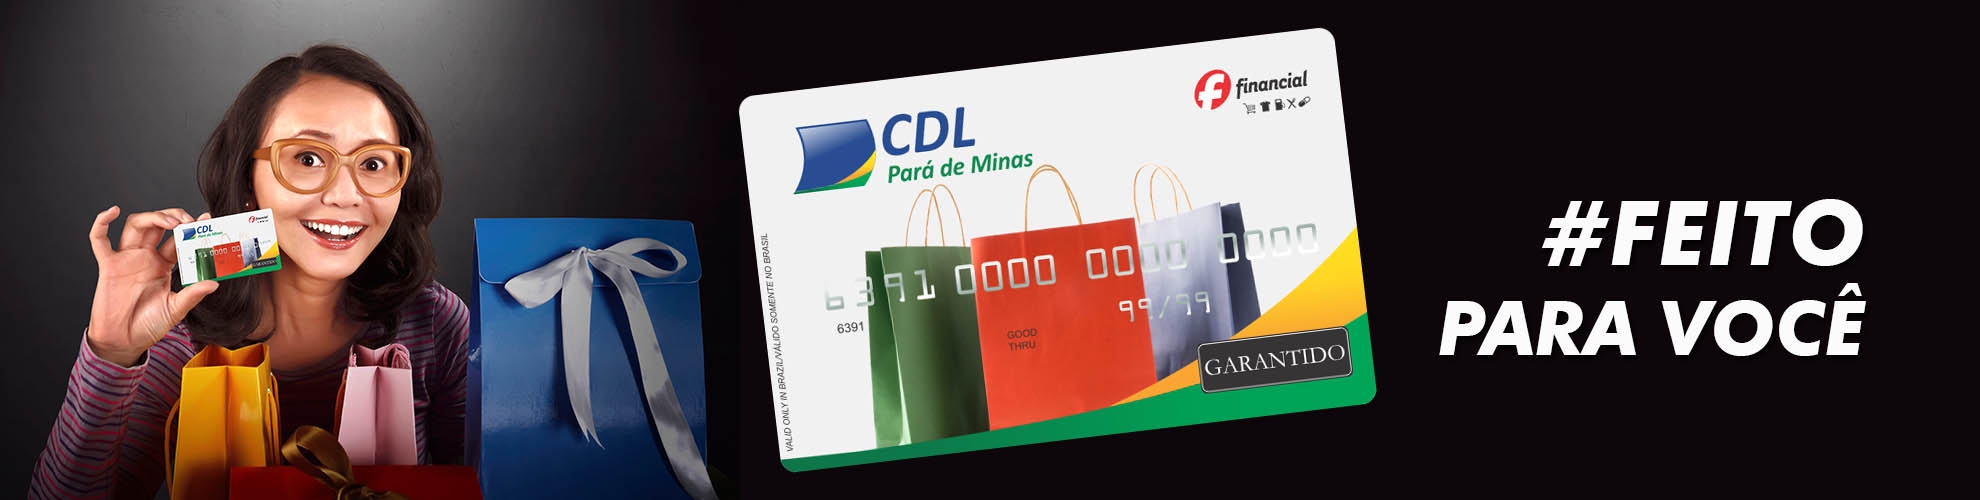 Cartão de Crédito CDL Pará de Minas